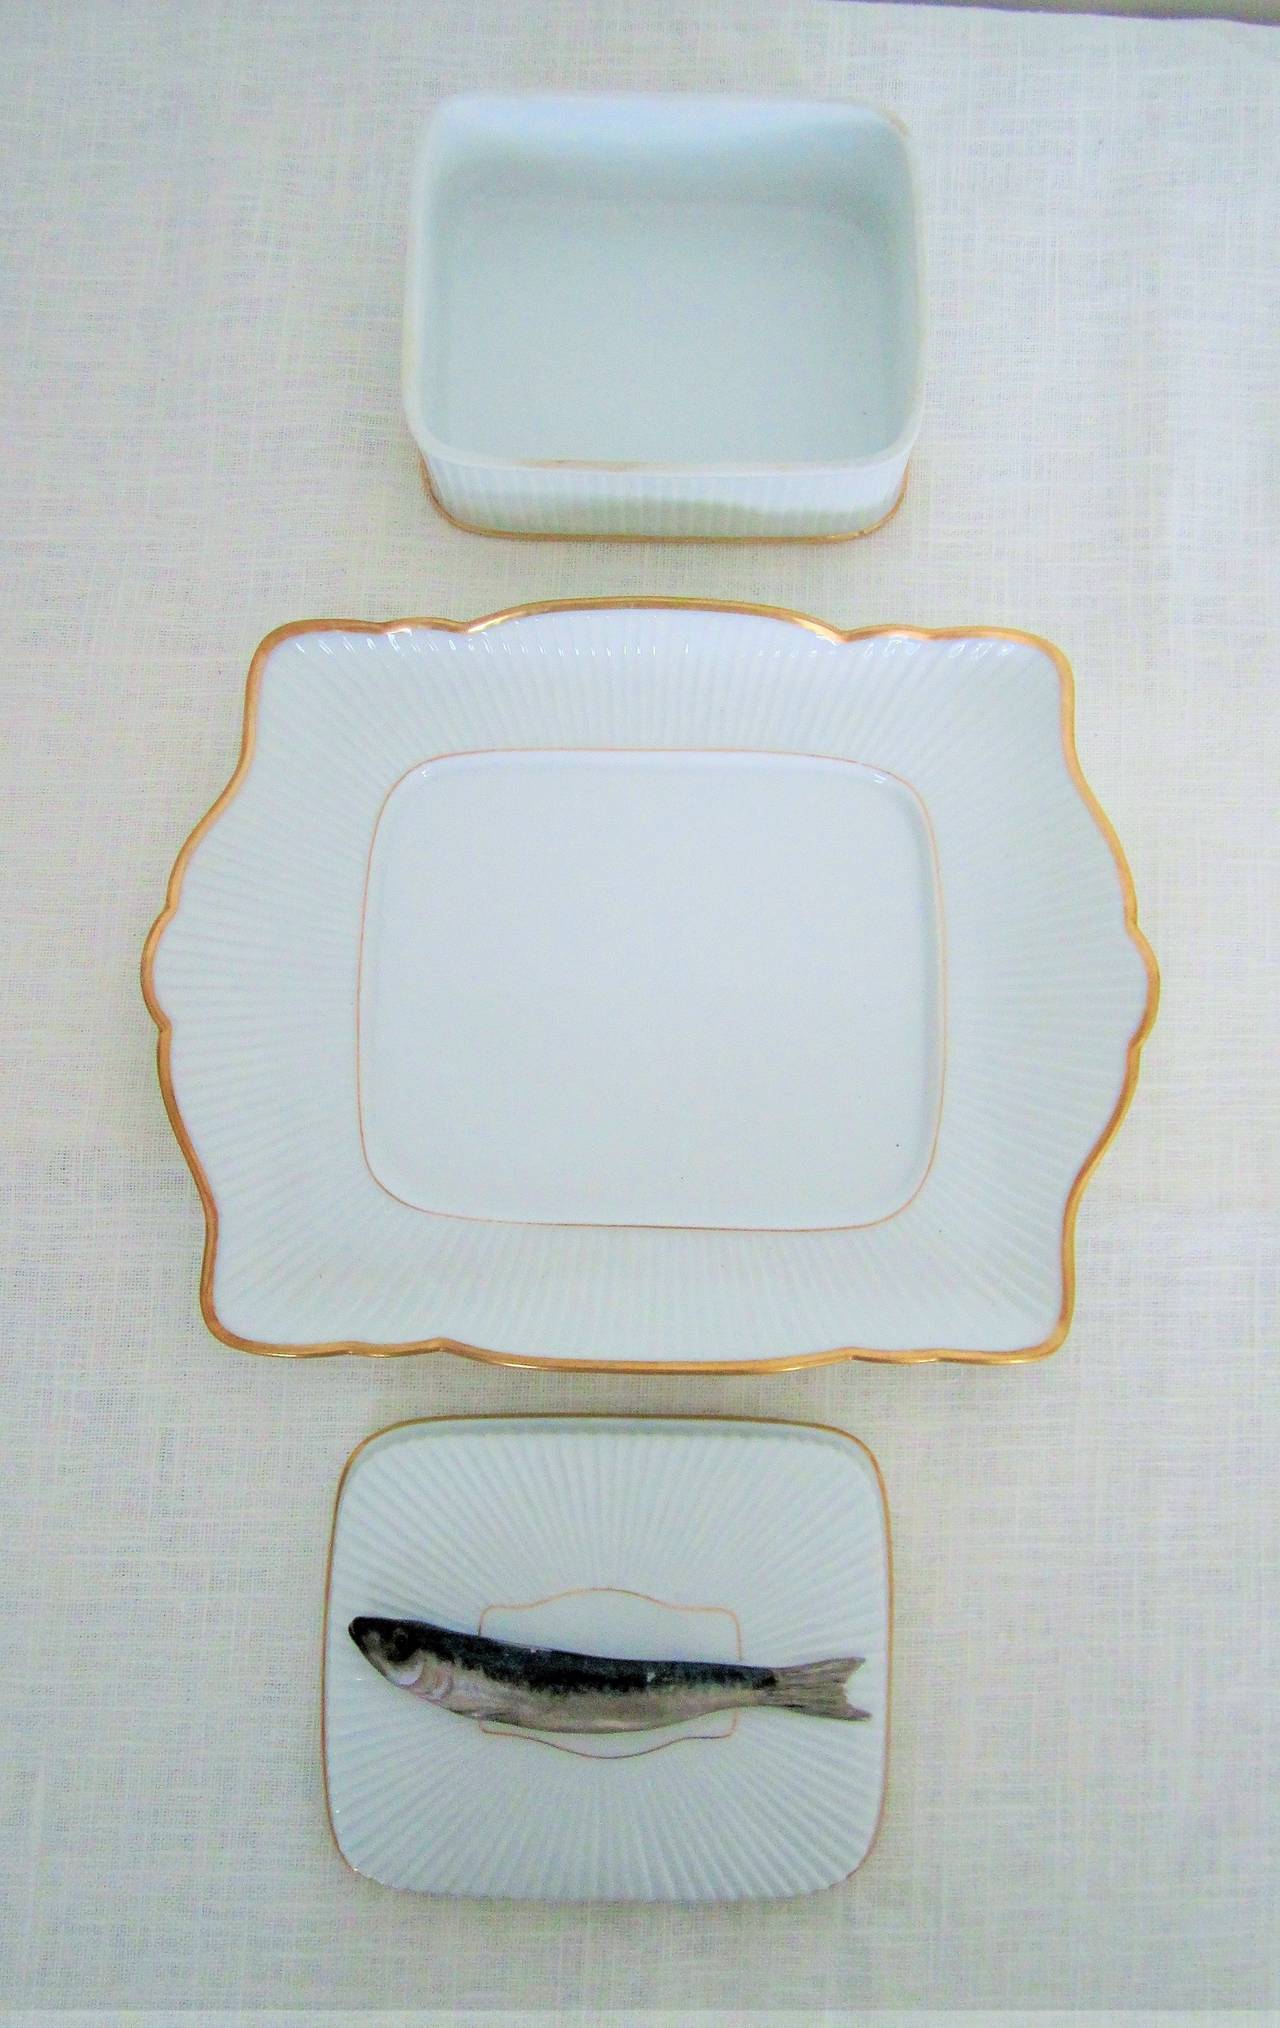 Glazed French Porcelain 'Sardine' Box Dish by Mehun